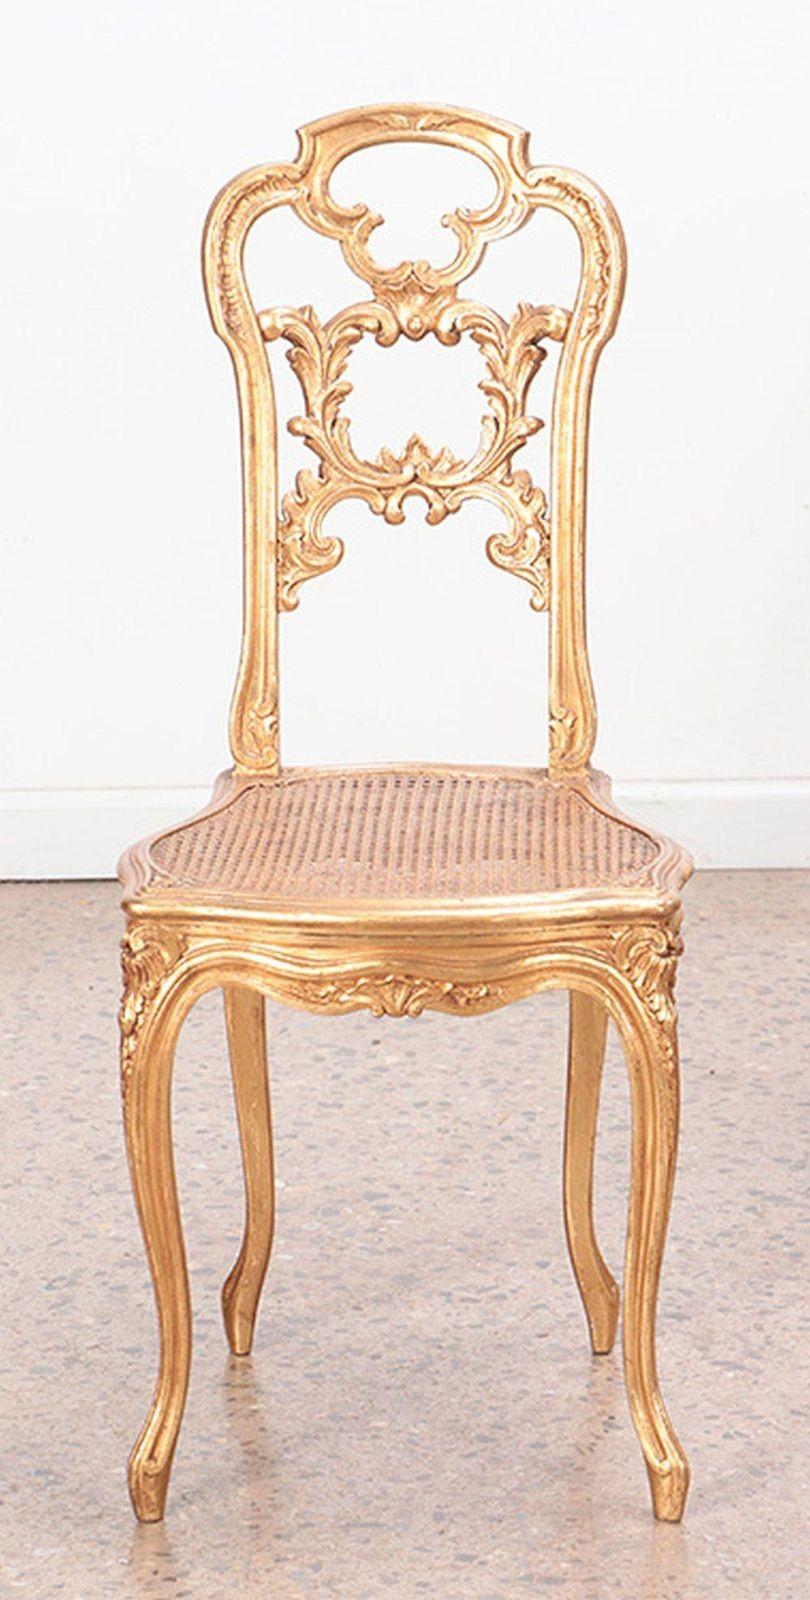 Chaises d'appoint en bois doré de style Louis XV, avec des motifs feuillagés sculptés à la main sur tout le pourtour. La riche finition dorée ajoute une touche de glamour et d'éclat aux chaises. Fabriqué en France, c.I.C., vers 1910.
Dimensions